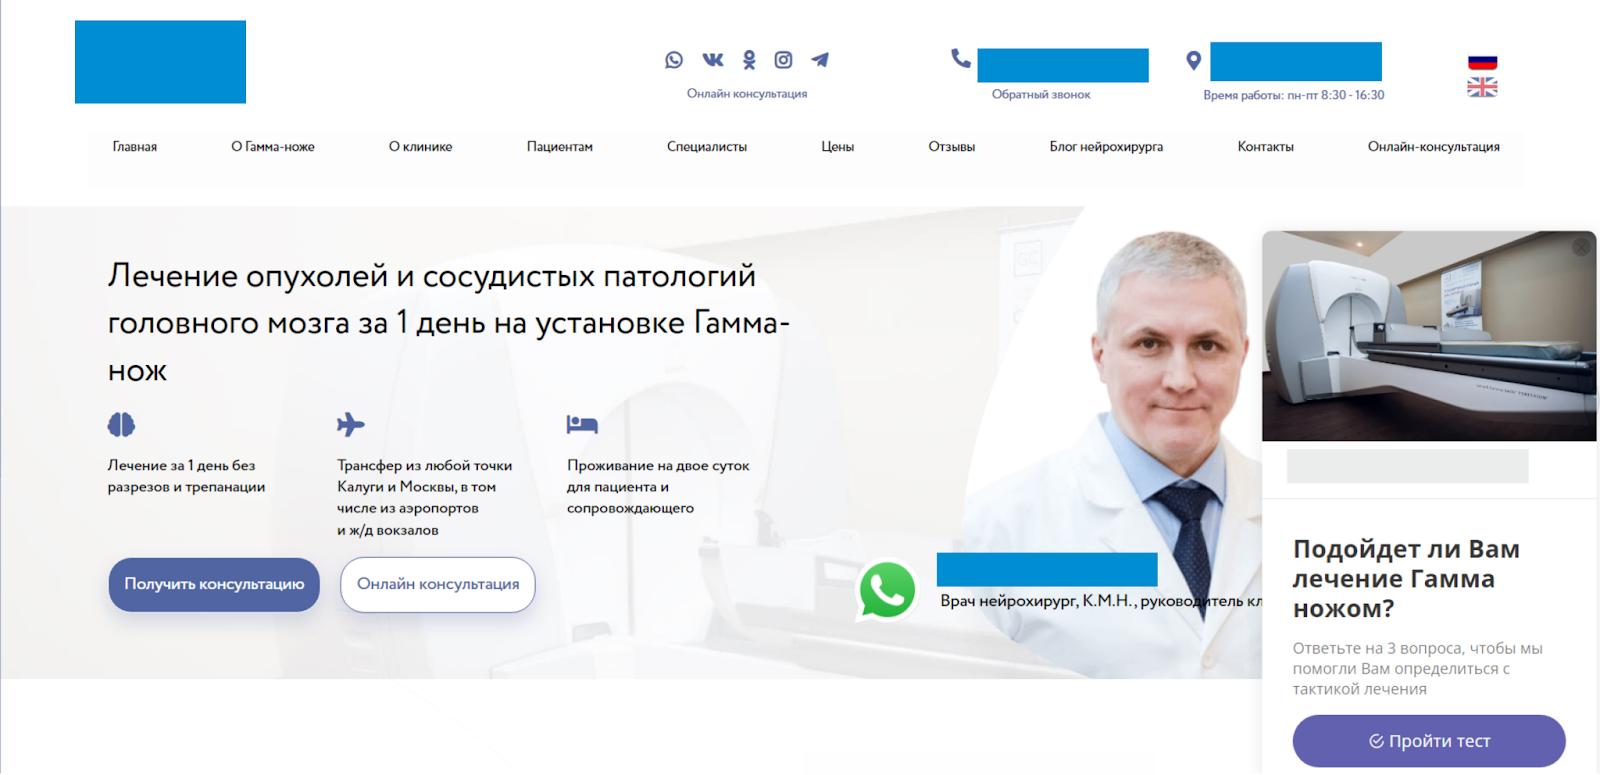 Сайты больниц города москва. Реклама медицинского центра. Реклама клиники 1881 Хабаровск.